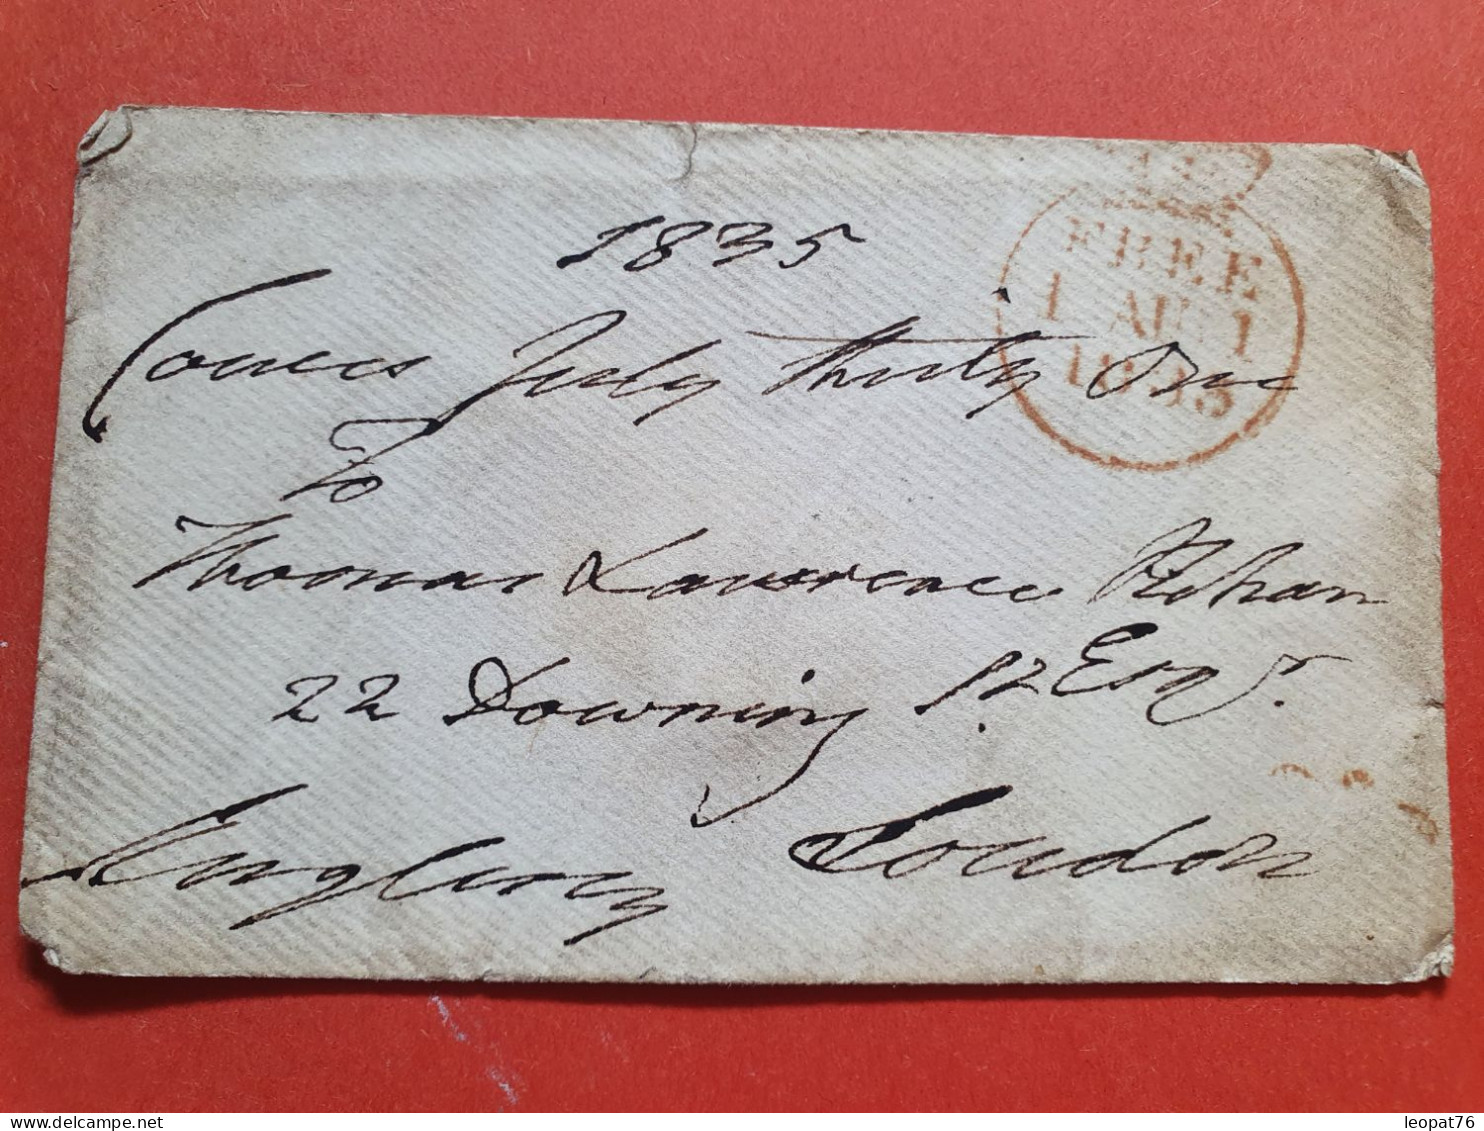 GB - Enveloppe En Franchise Postale Pour Londres En 1835 - Réf J 217 - ...-1840 Precursori